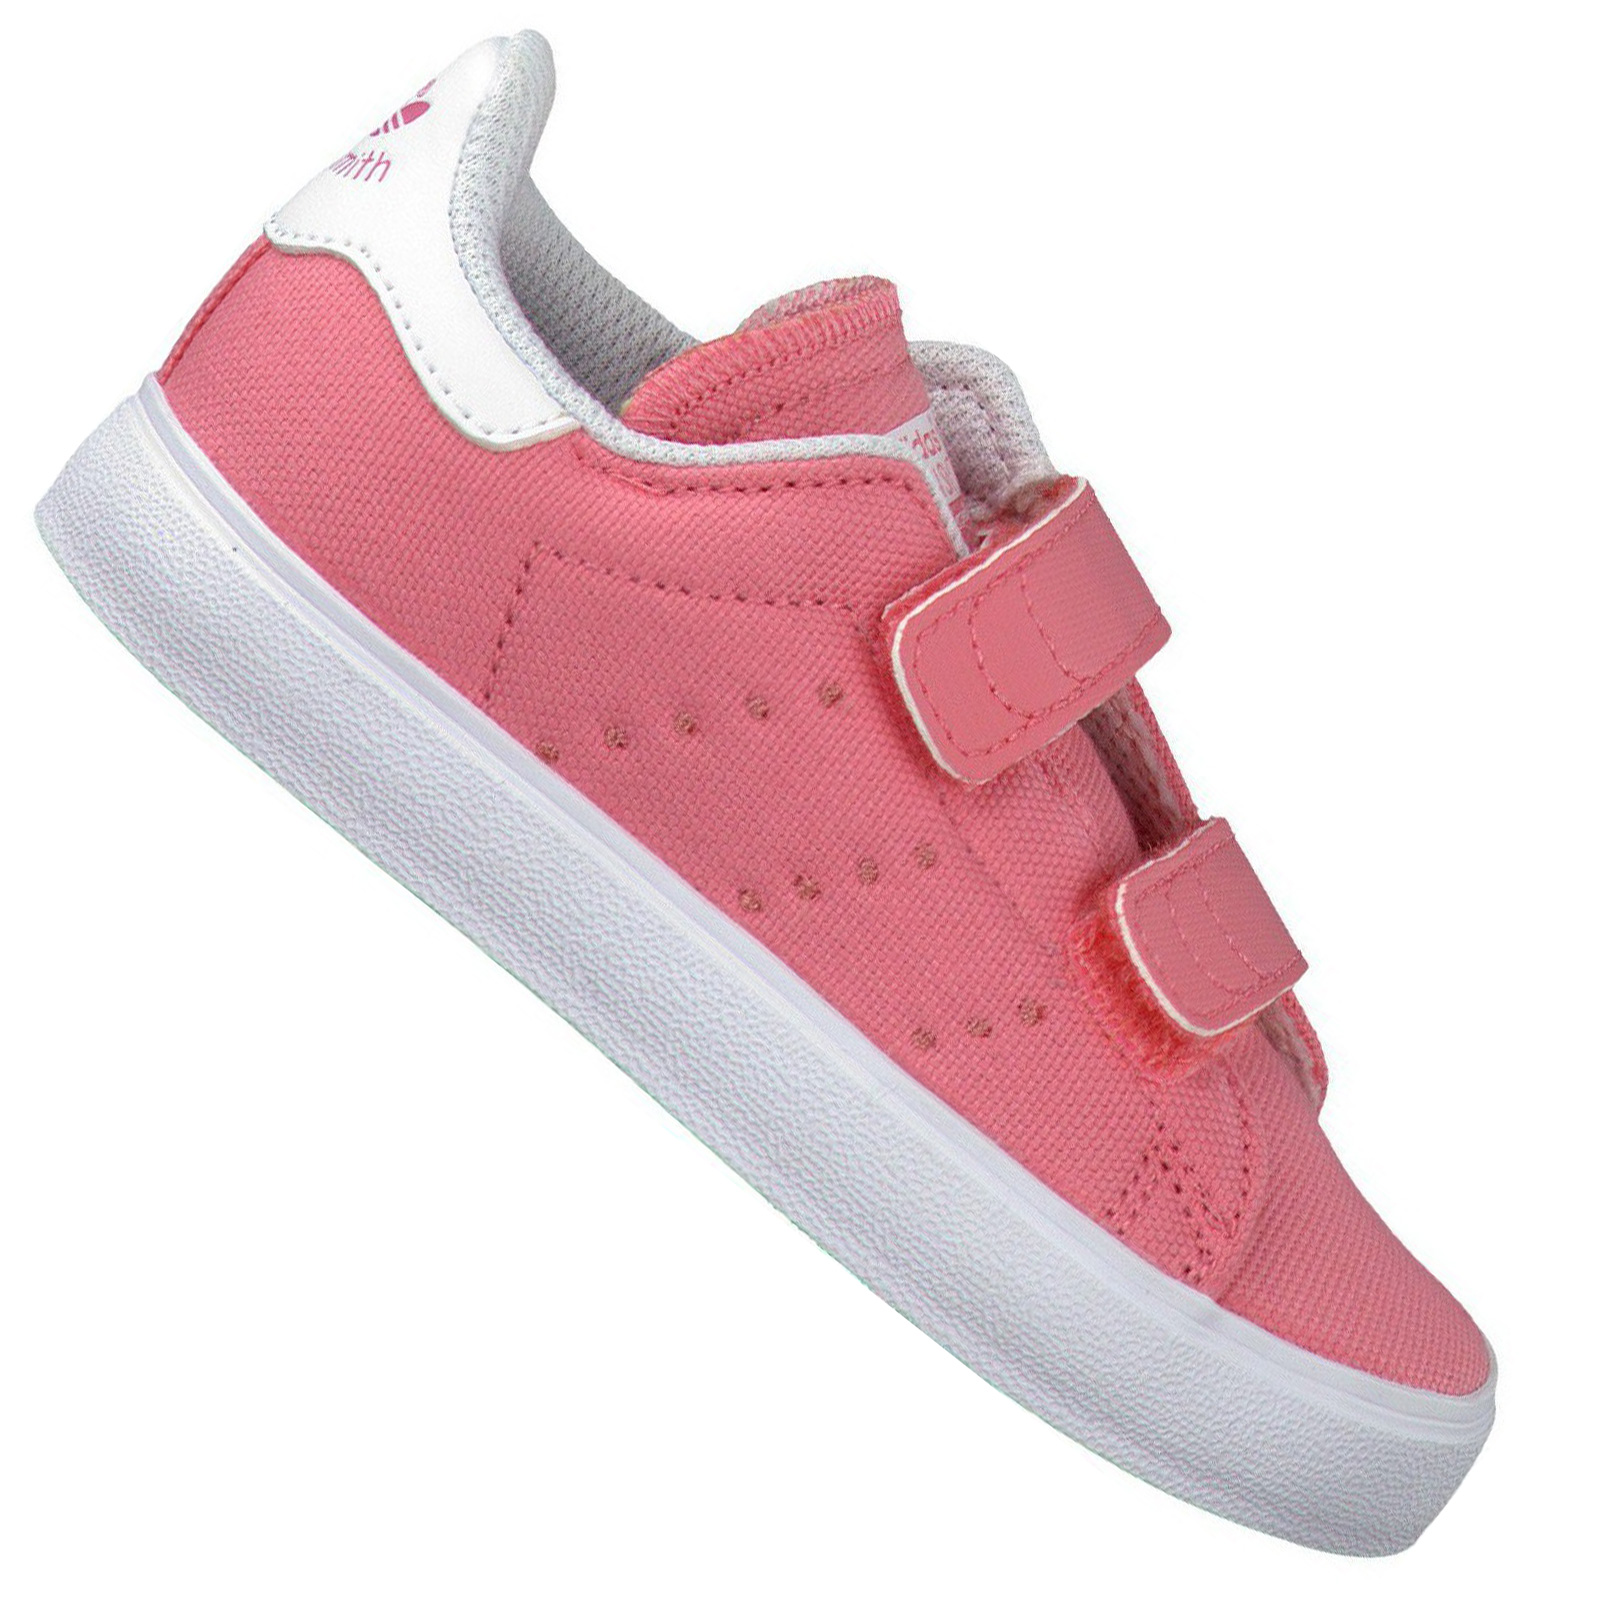 Adidas Originals Stan Smith Sneaker La Trainer Gazelle Pink White | eBay